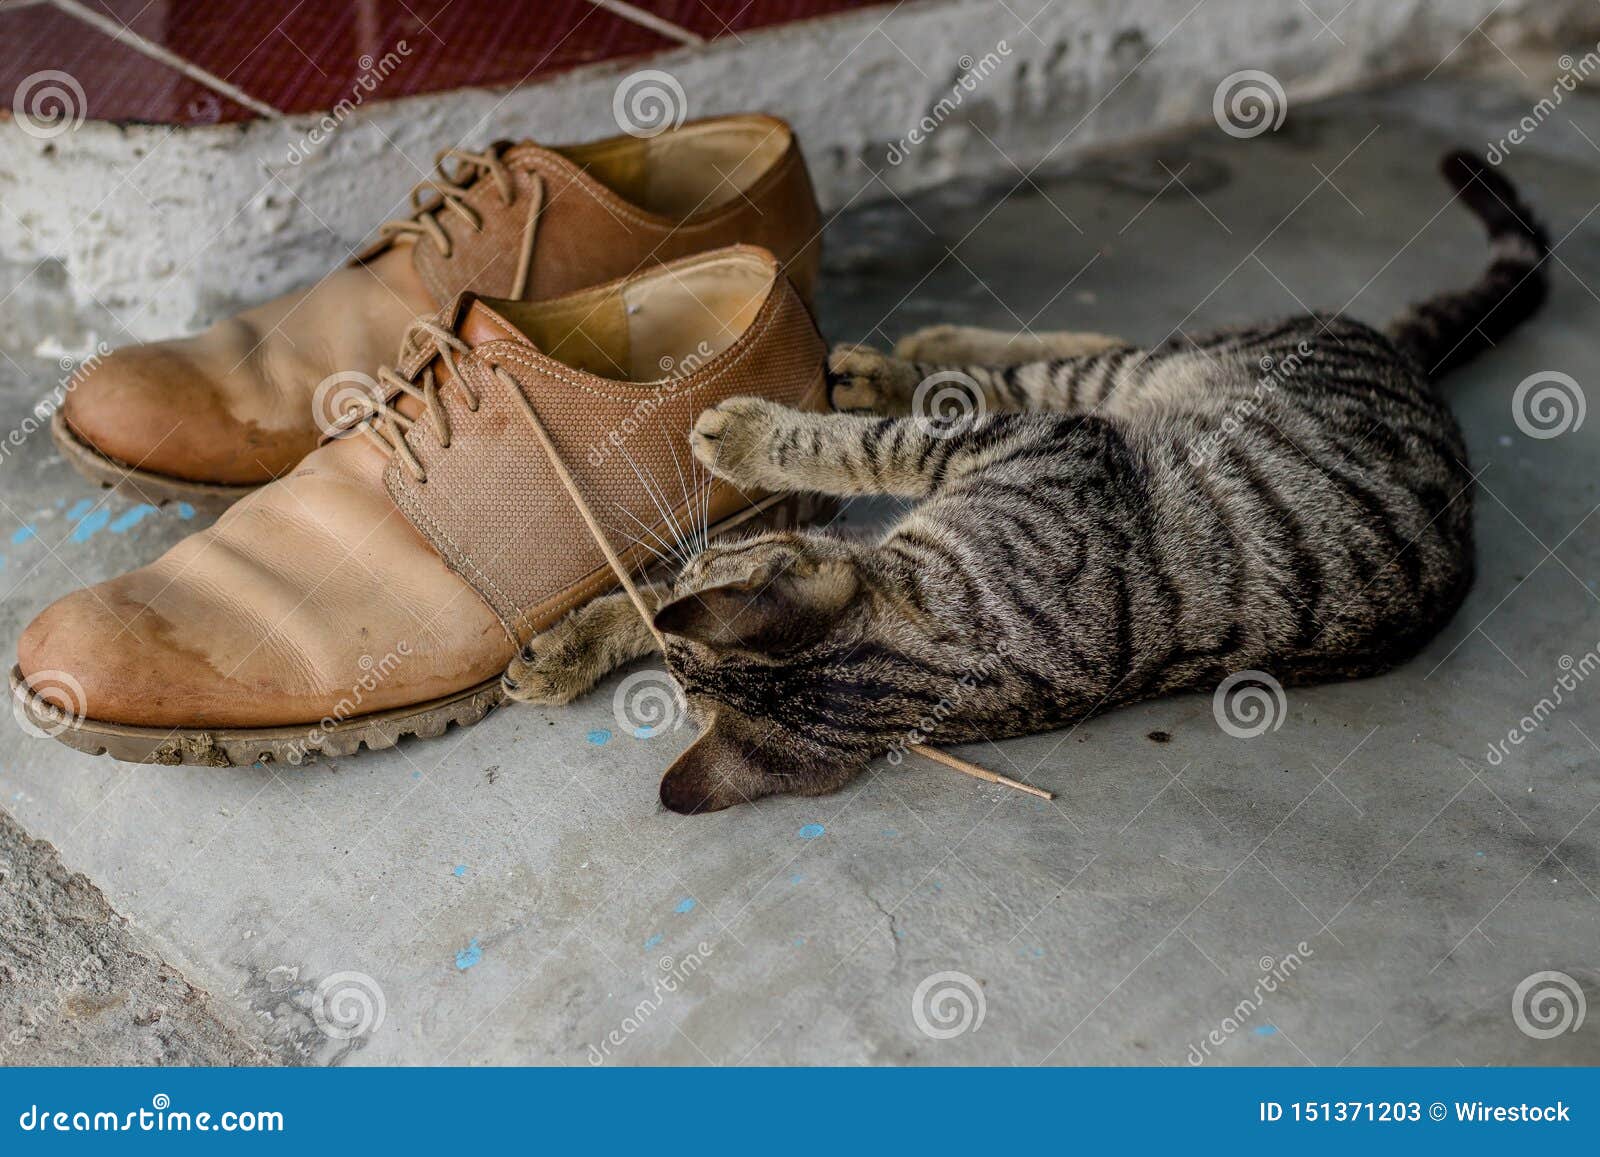 cat shoelaces